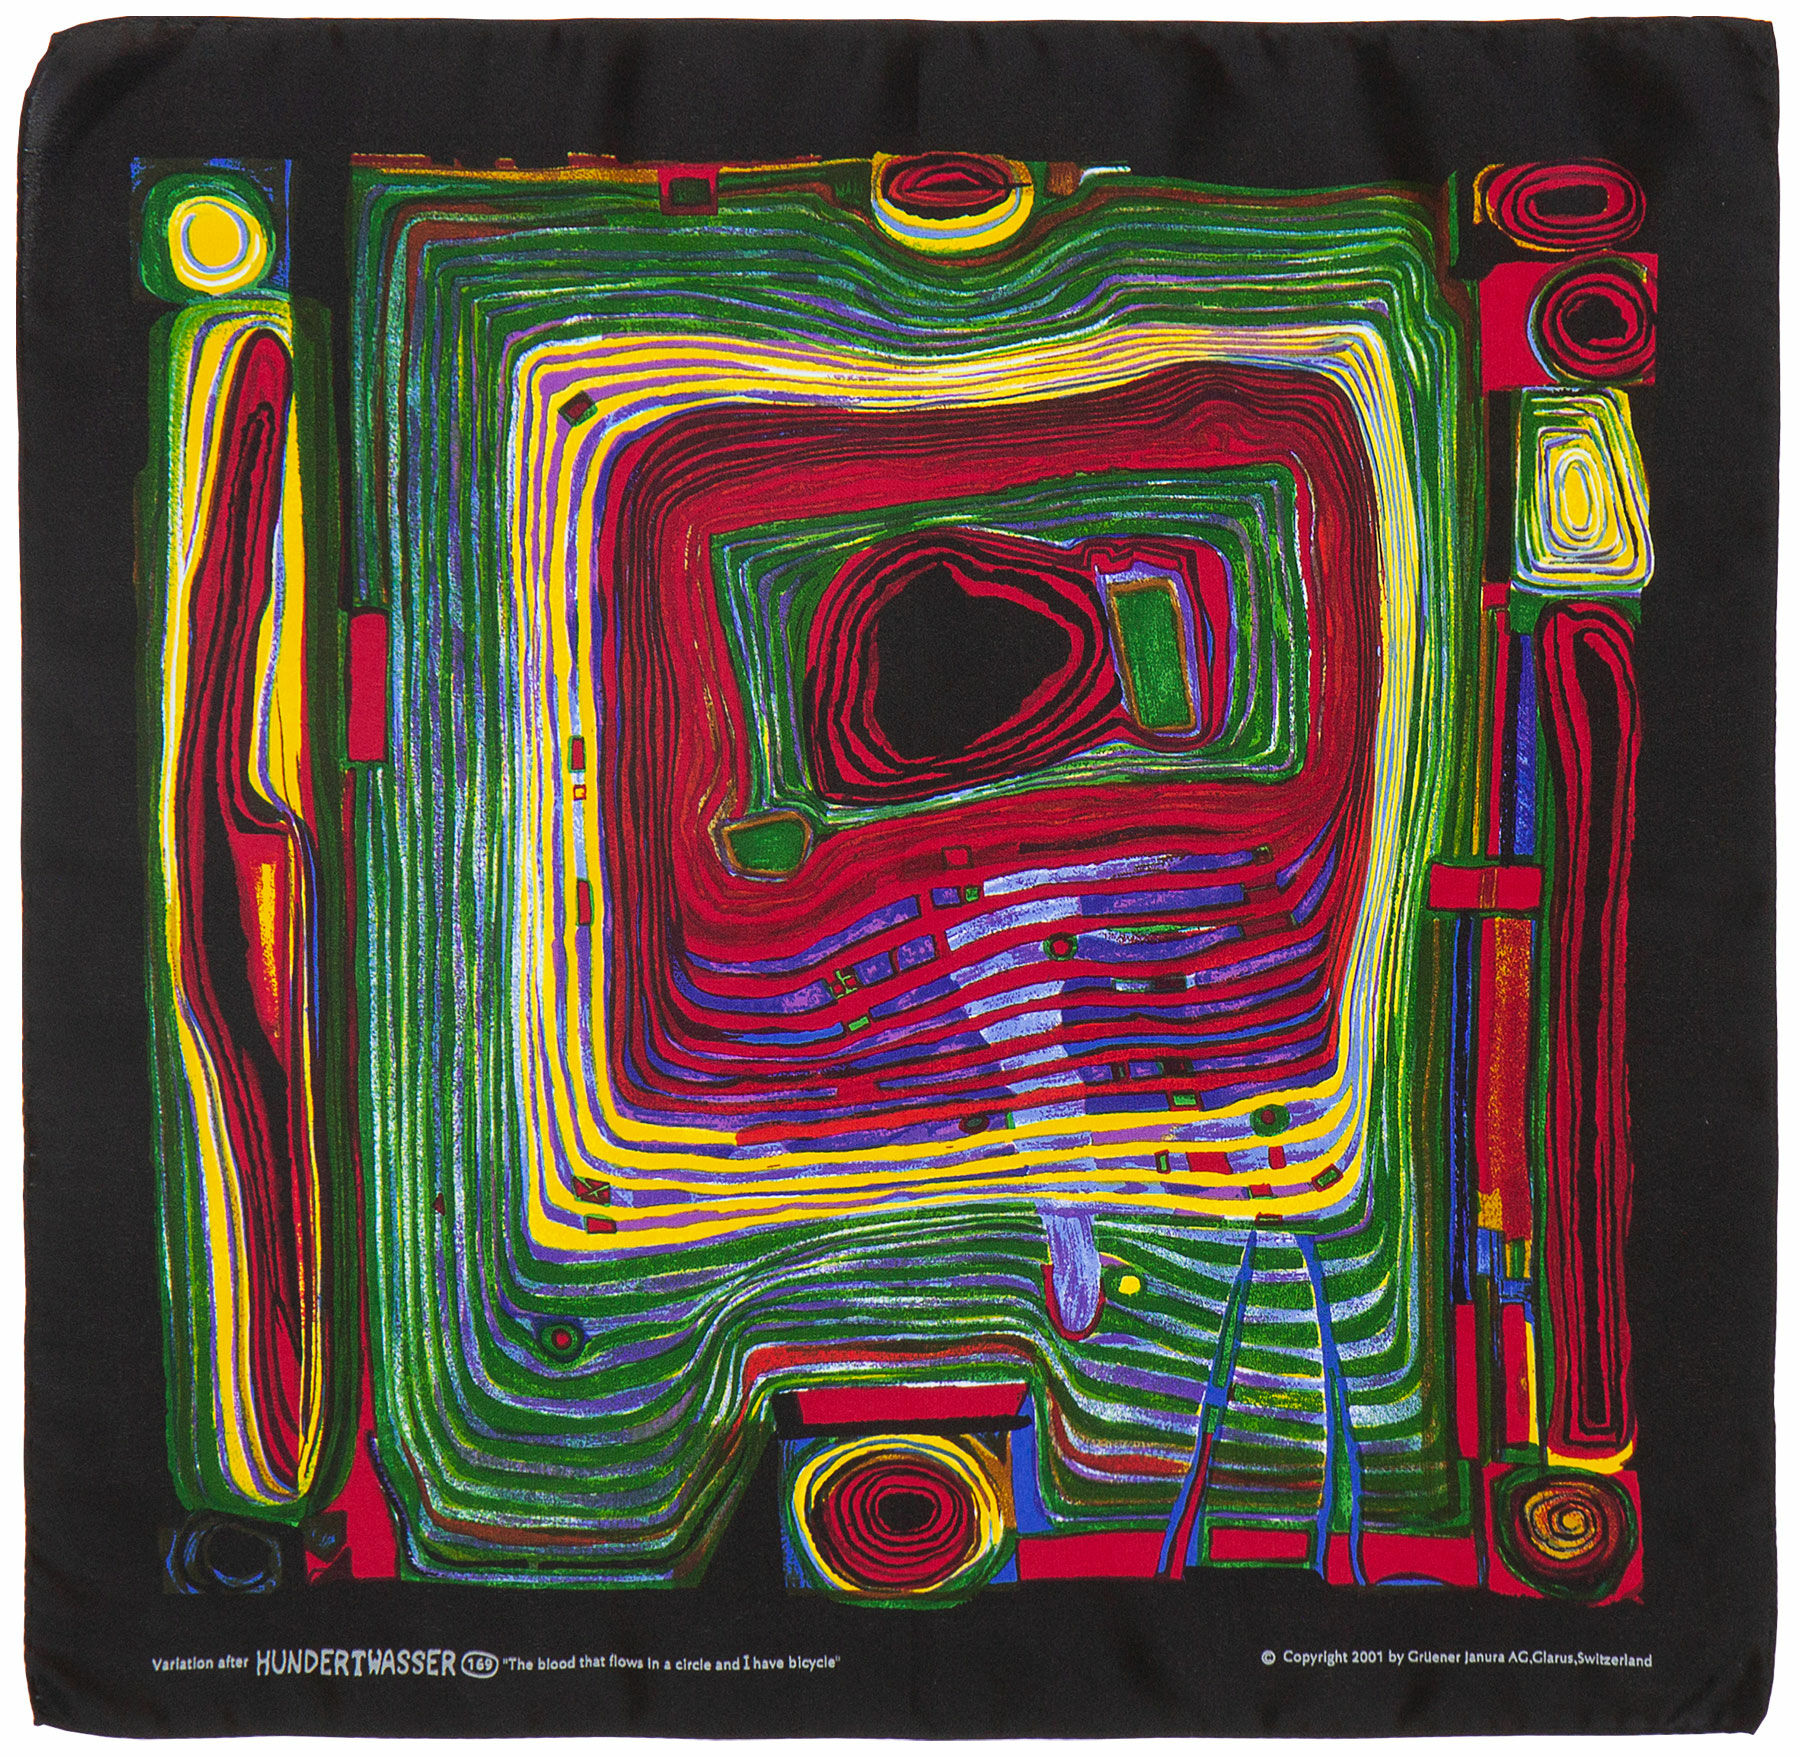 Silkelommetørklæde "Blodet, der flyder i en cirkel, og jeg har en cykel" (1975) von Friedensreich Hundertwasser